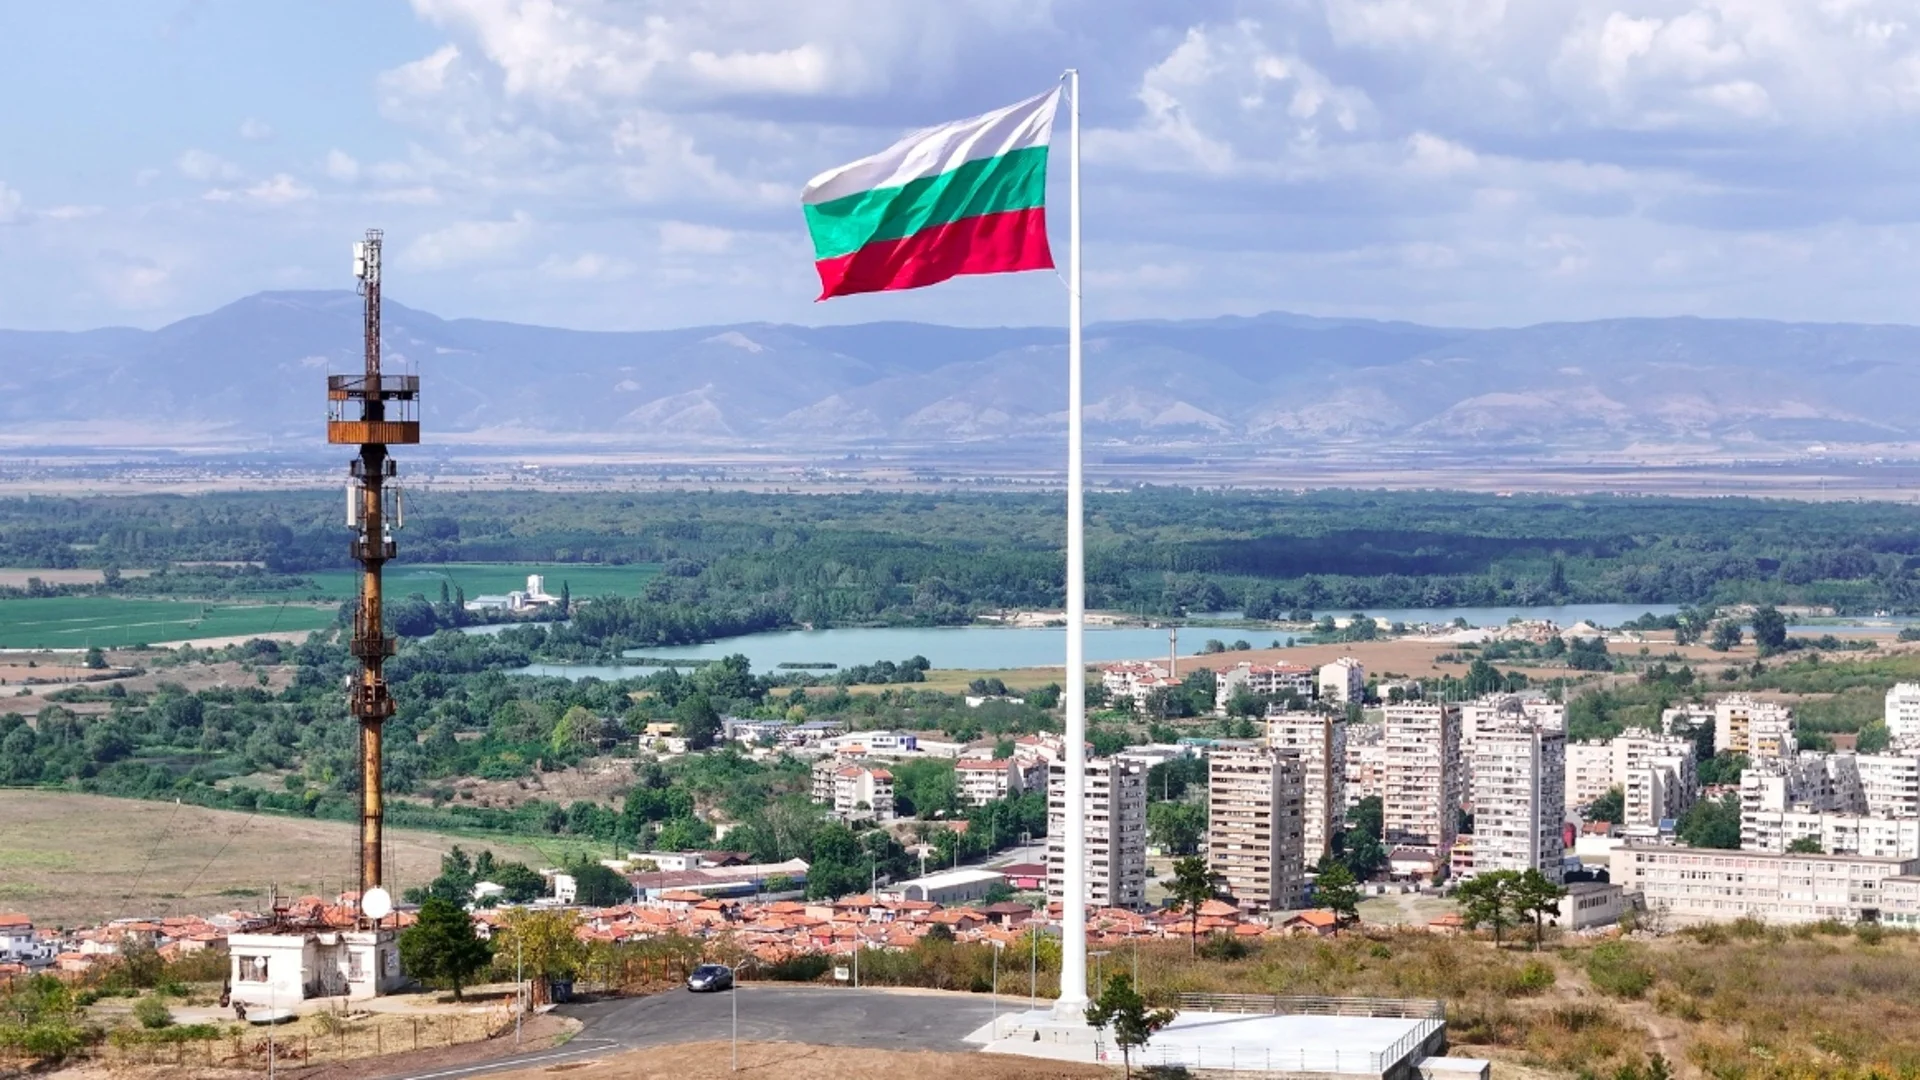 Дъбилин - старото име на кой голям български град е?